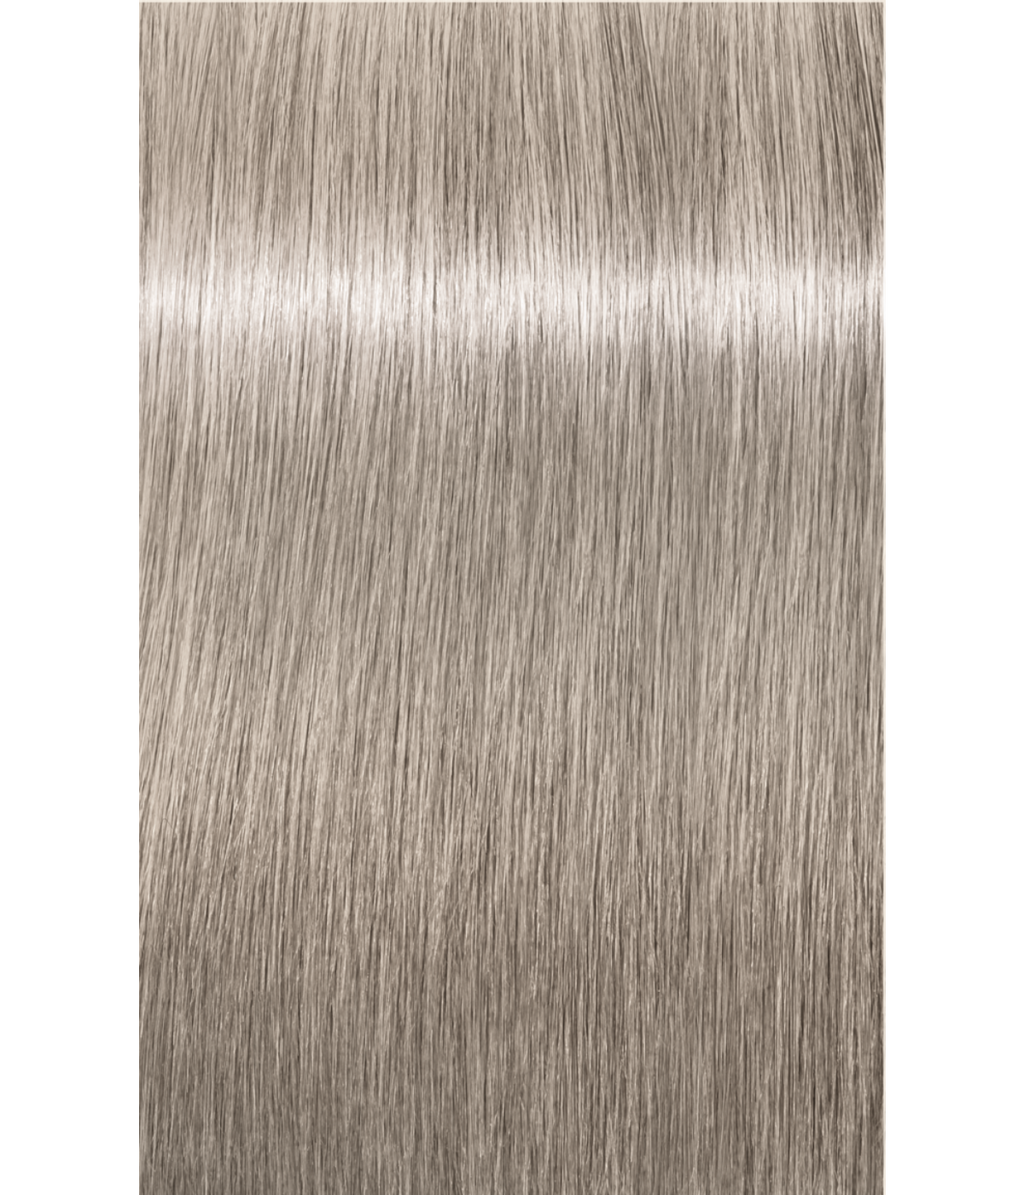 Schwarzkopf Igora Royal Permanent Cream Hair Color 9.5-4 Pastel Beige  Blonde 60g